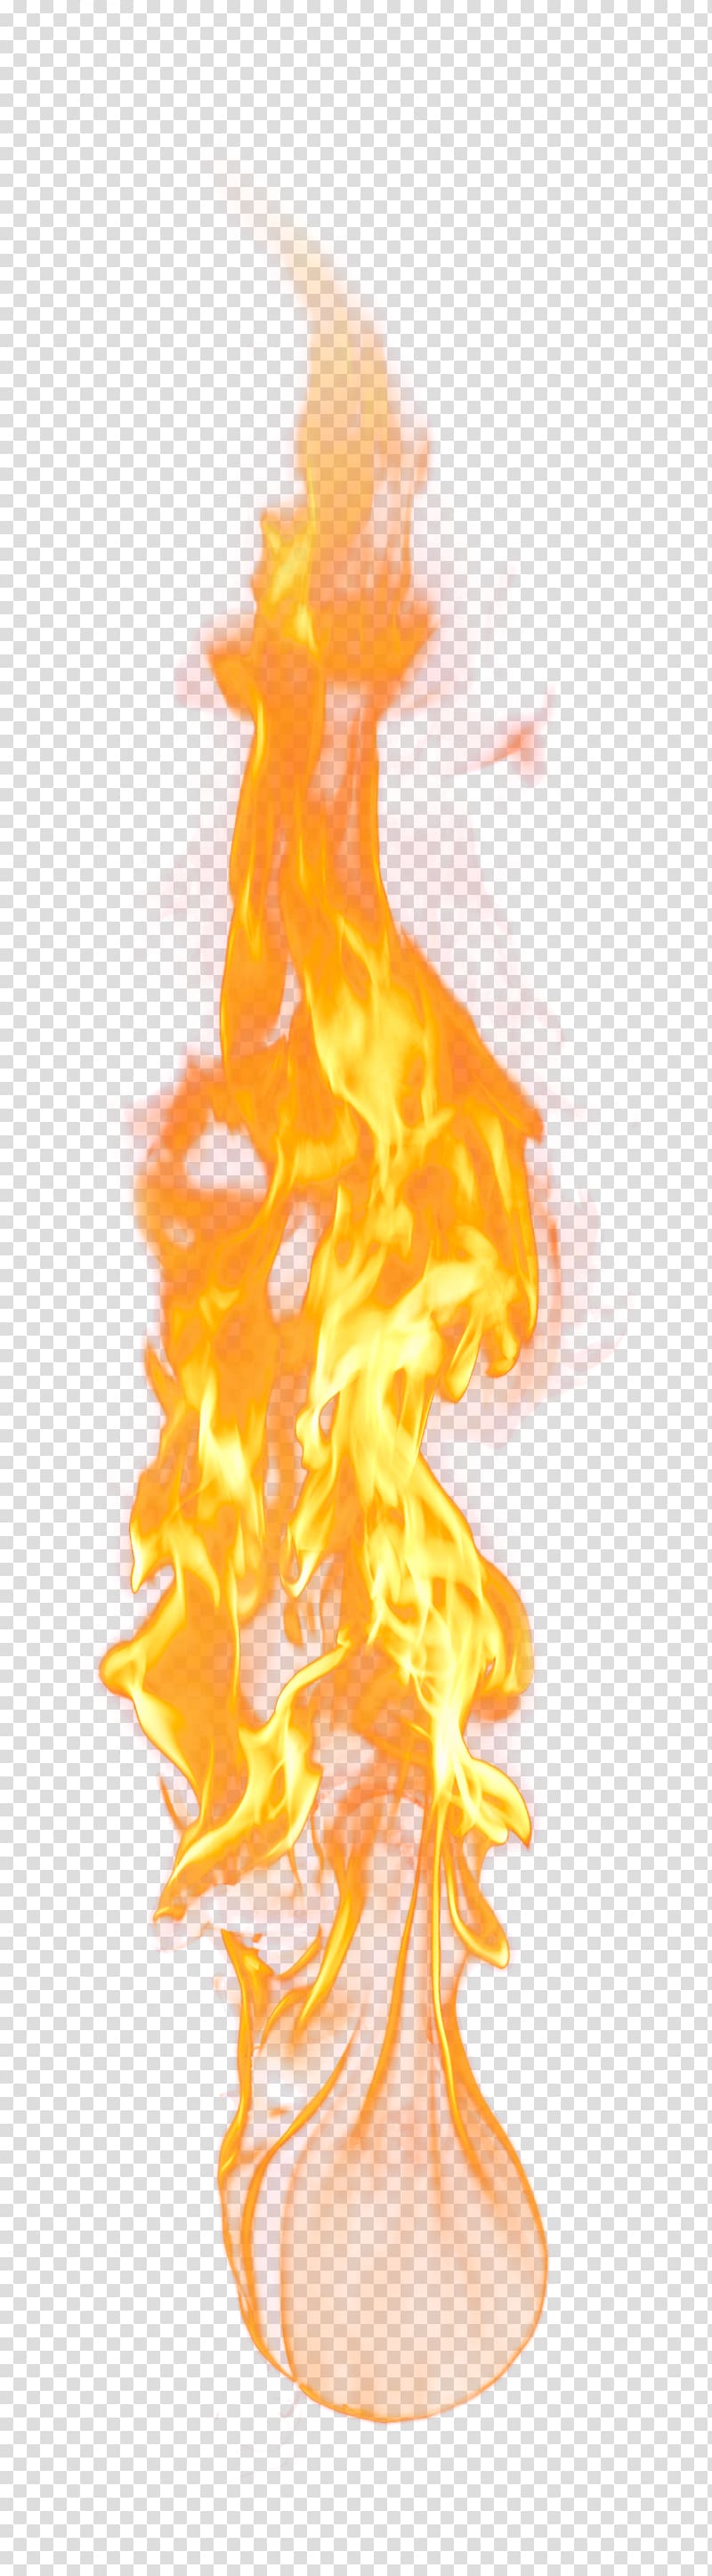 orange flame illustration, Flame , Fantastic little flames transparent background PNG clipart